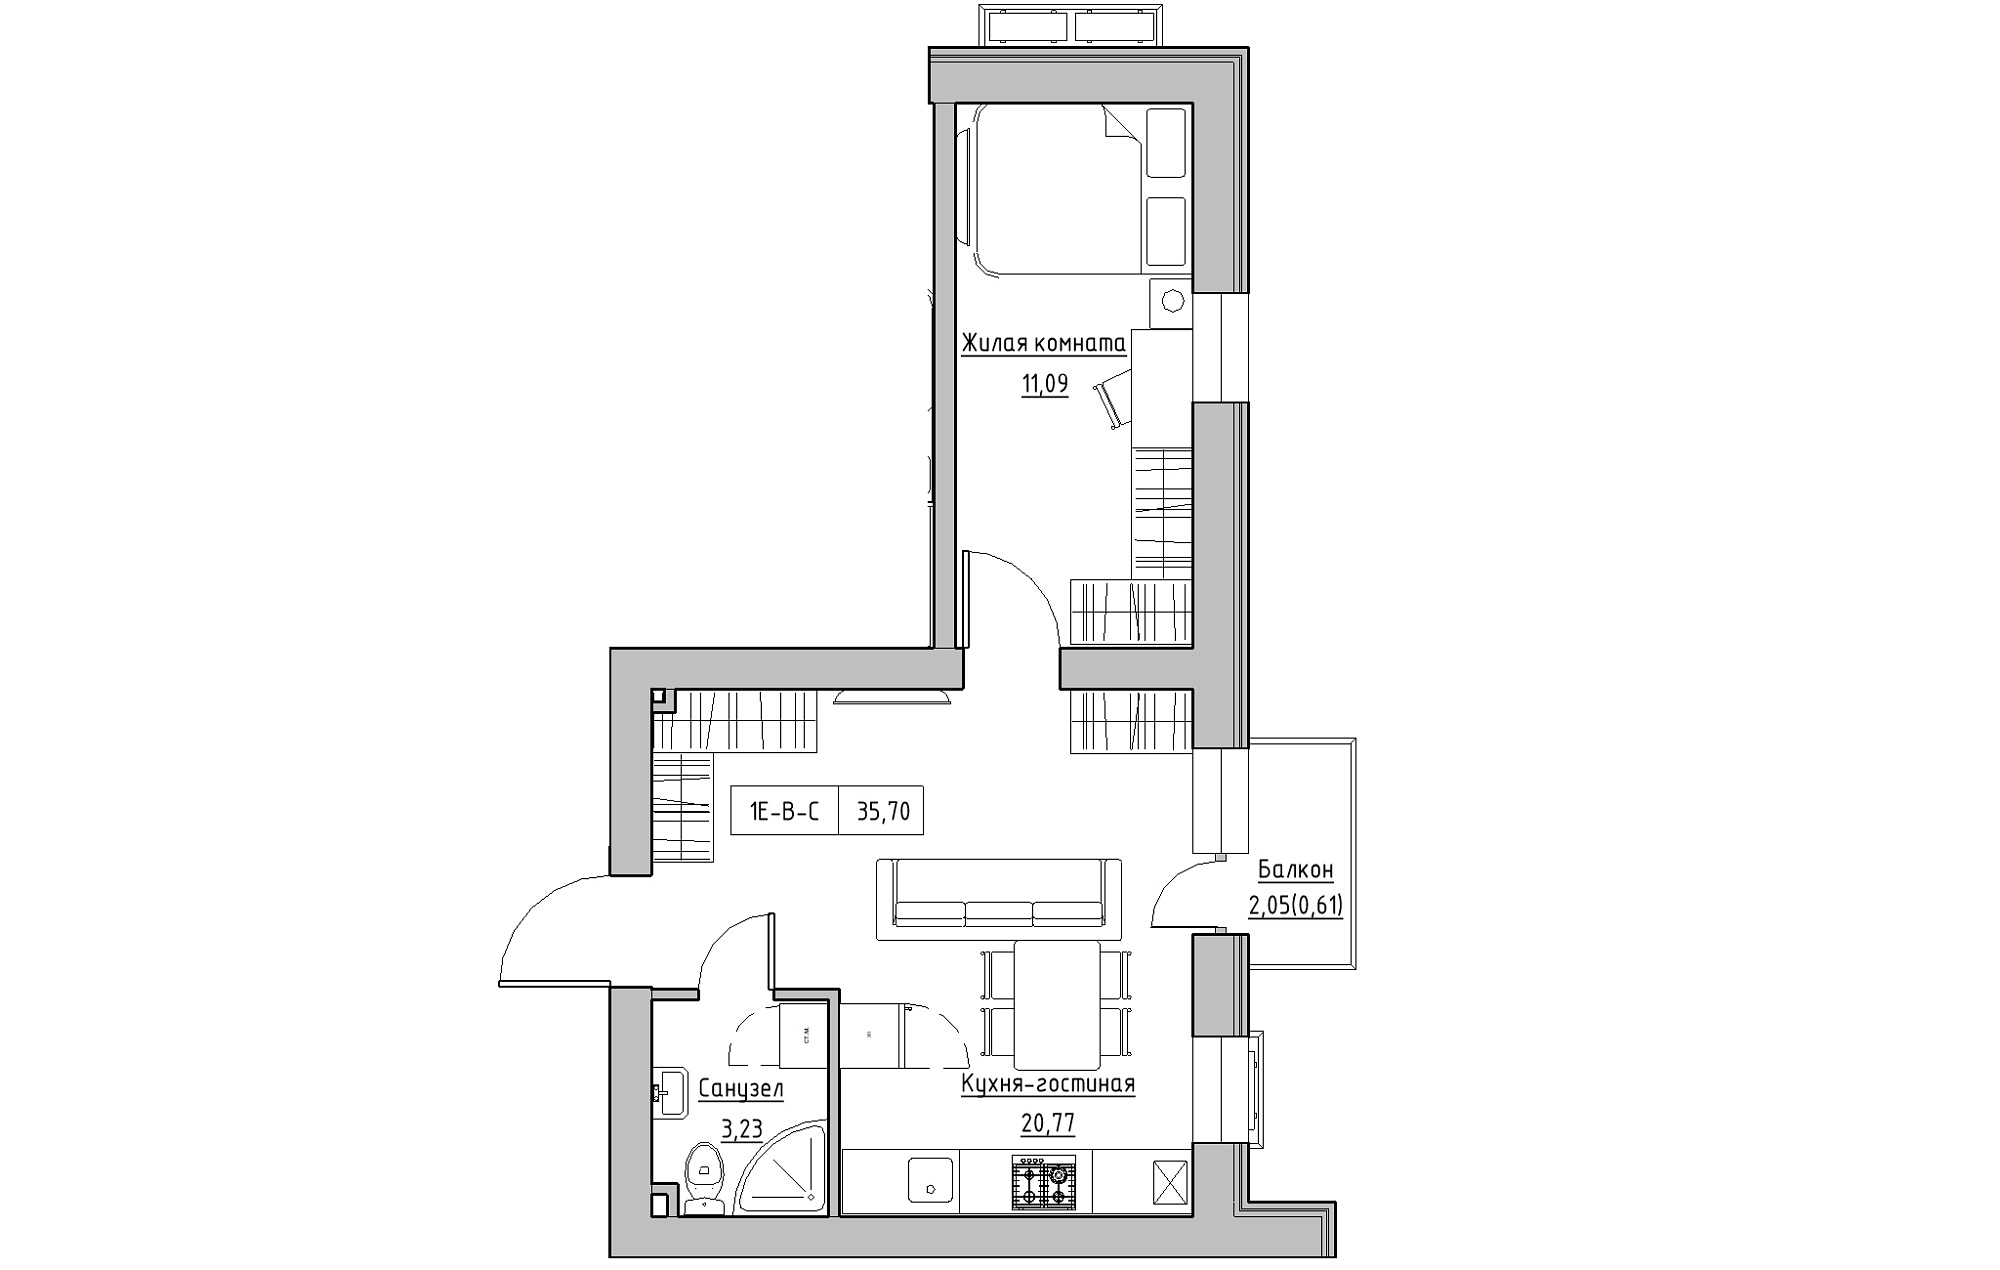 Планування 1-к квартира площею 35.7м2, KS-018-04/0009.